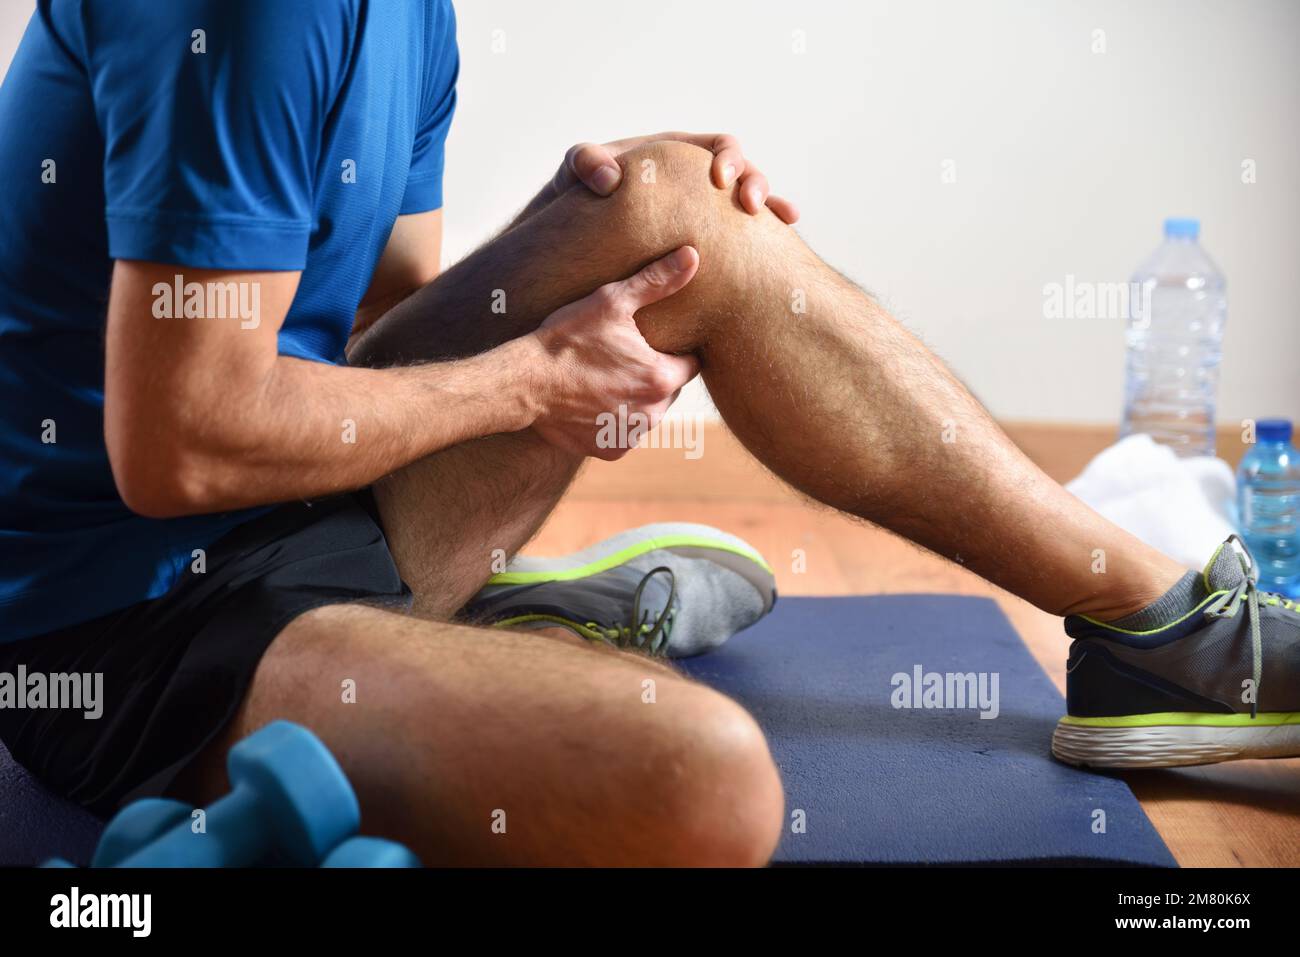 Détail de l'homme faisant du sport avec des douleurs au genou se tenant avec sa main assise sur un tapis. Vue latérale. Banque D'Images